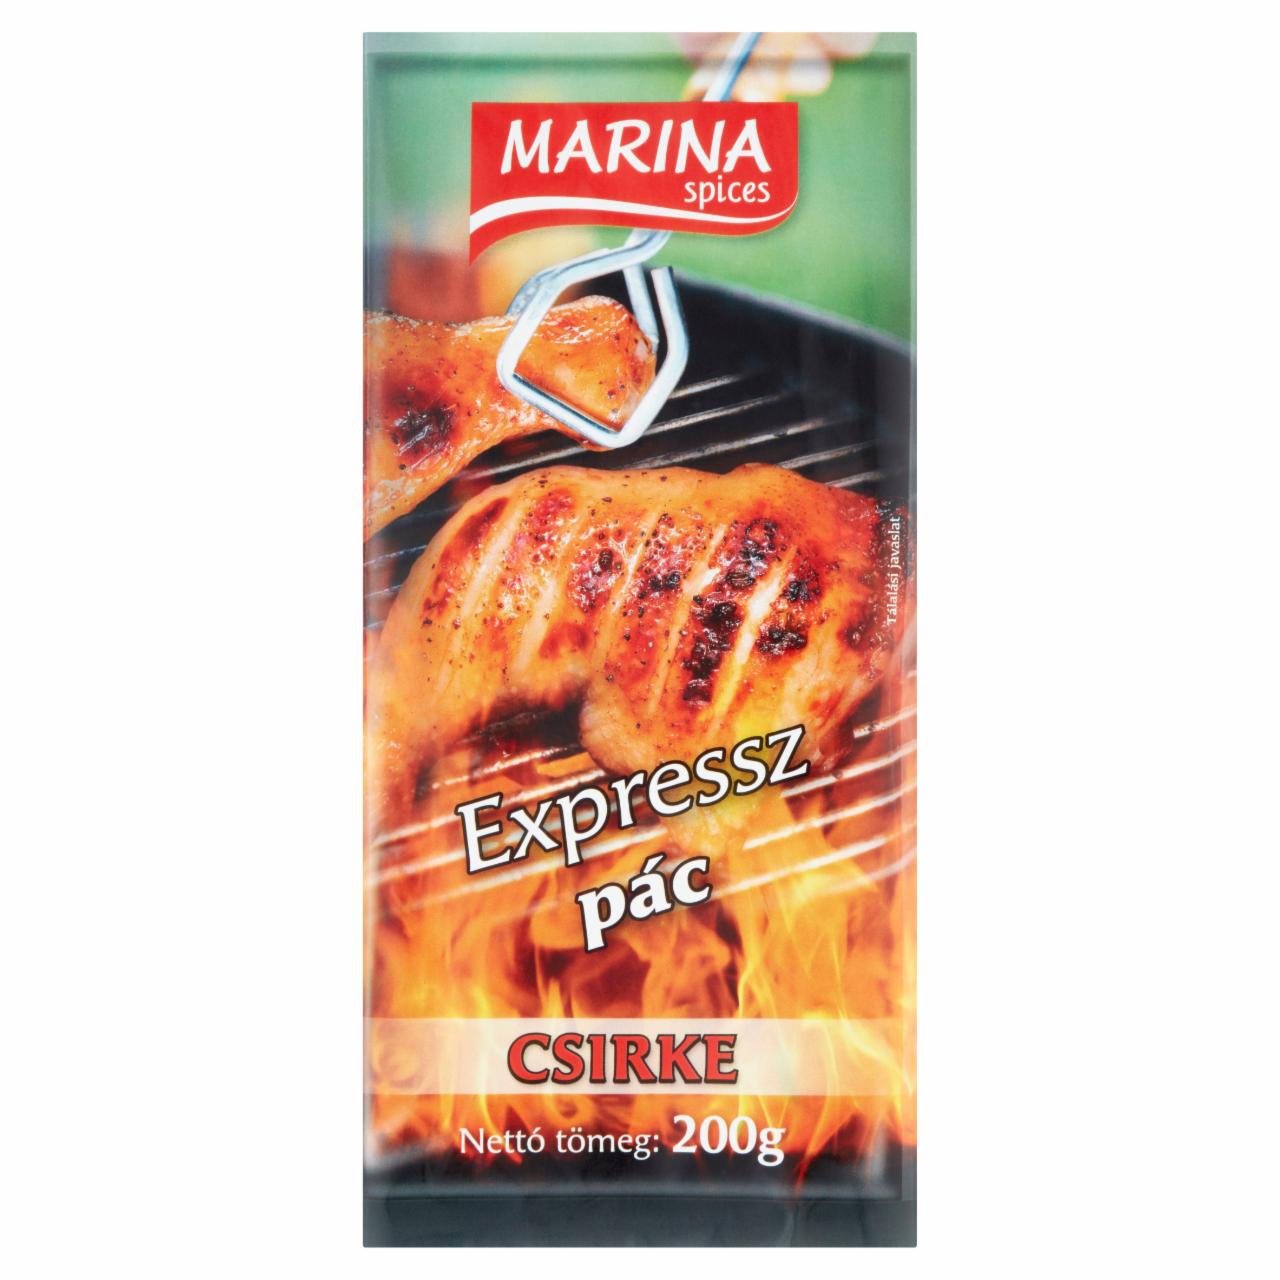 Képek - Marina expressz pác csirke 200 g